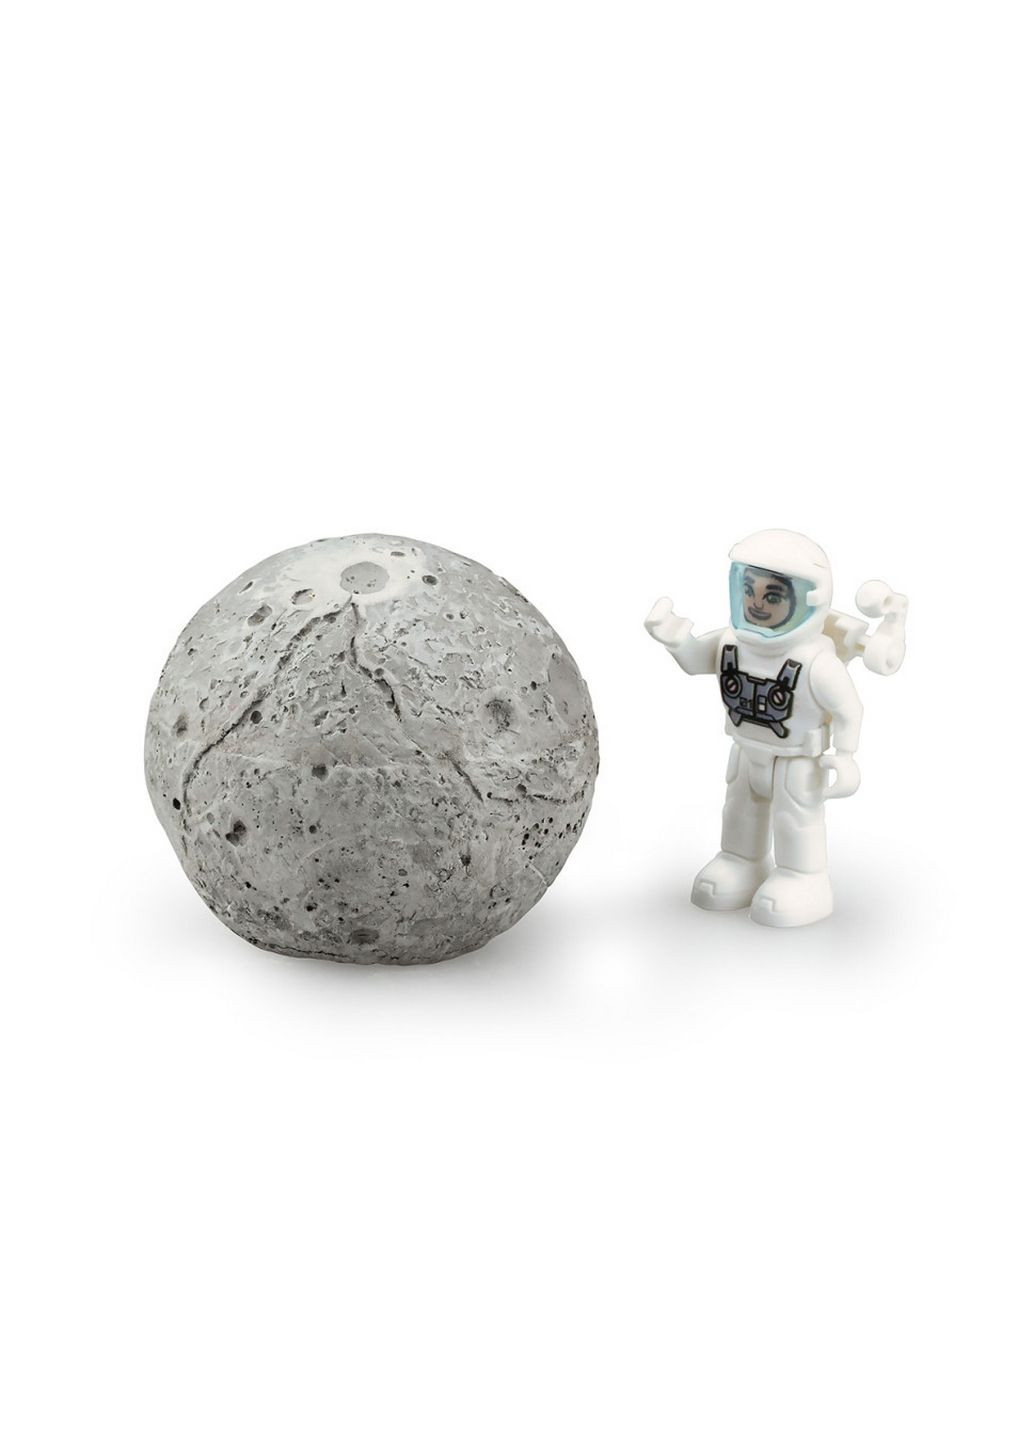 Ігровий набір Місія «Дослідж місячний камінь» Astropod з фігуркою 15,9х17,78х8,26 см Silverlit (289364320)